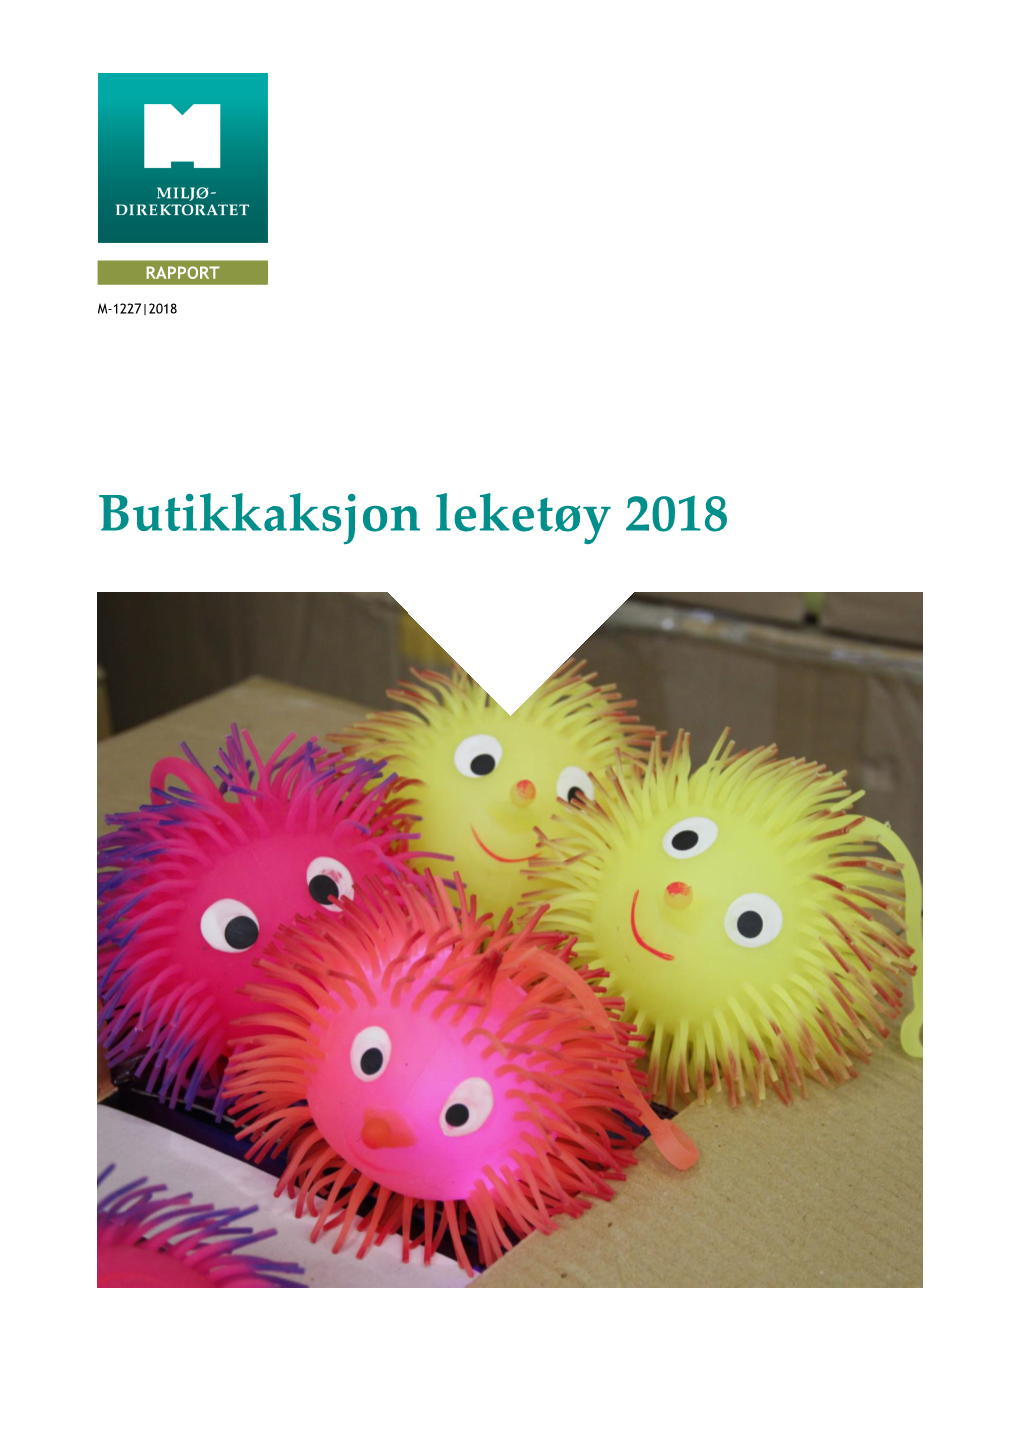 Butikkaksjon Leketøy 2018